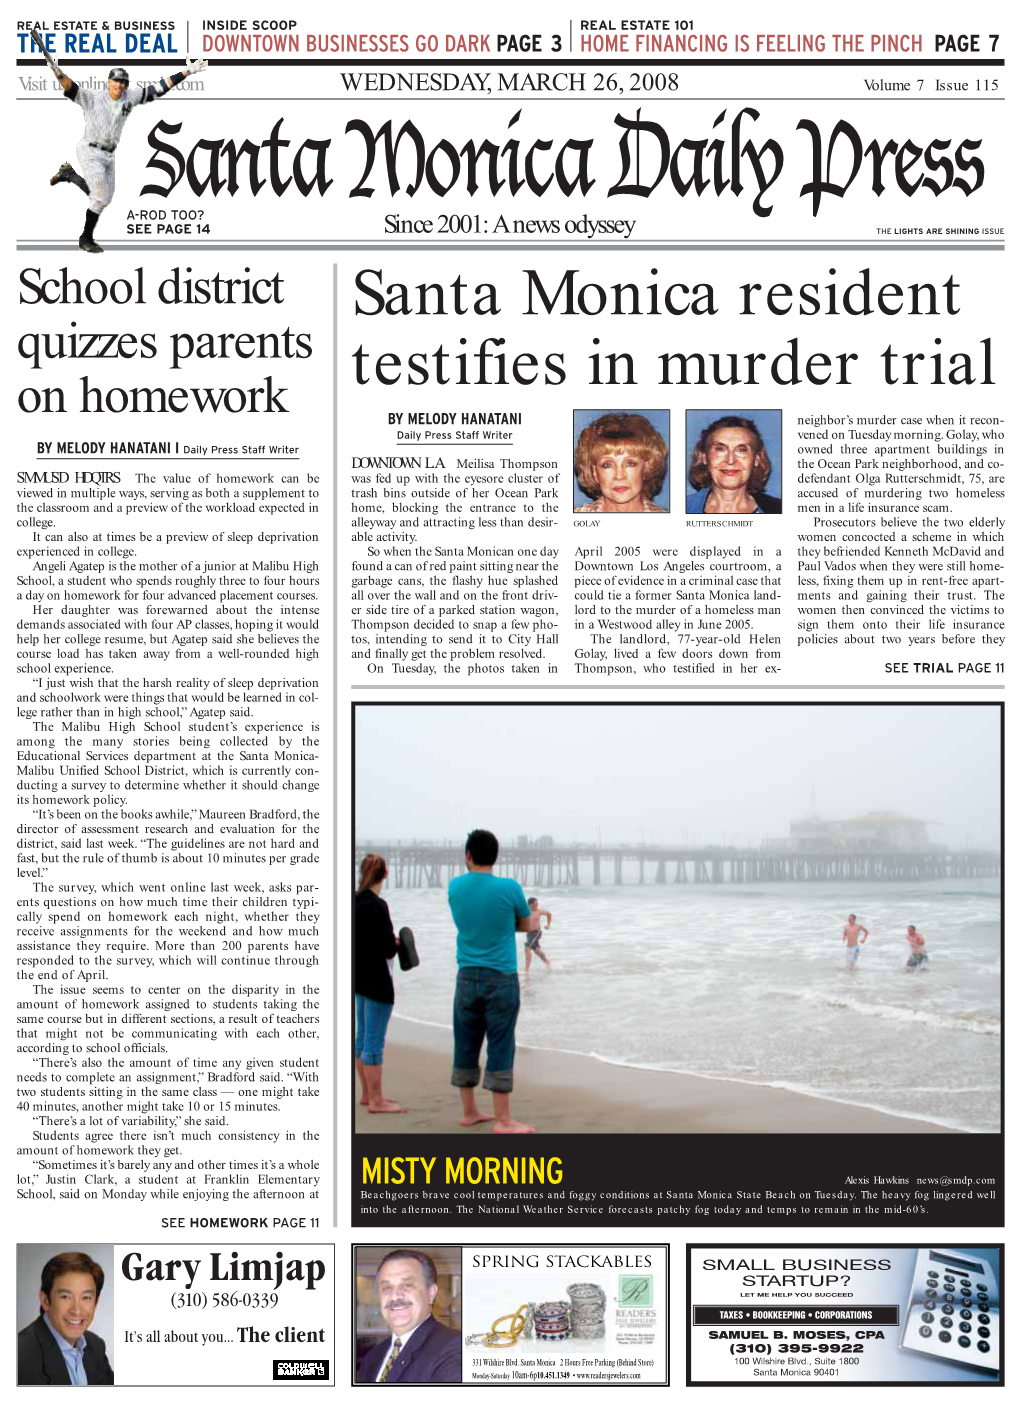 Santa Monica Resident Testifies in Murder Trial